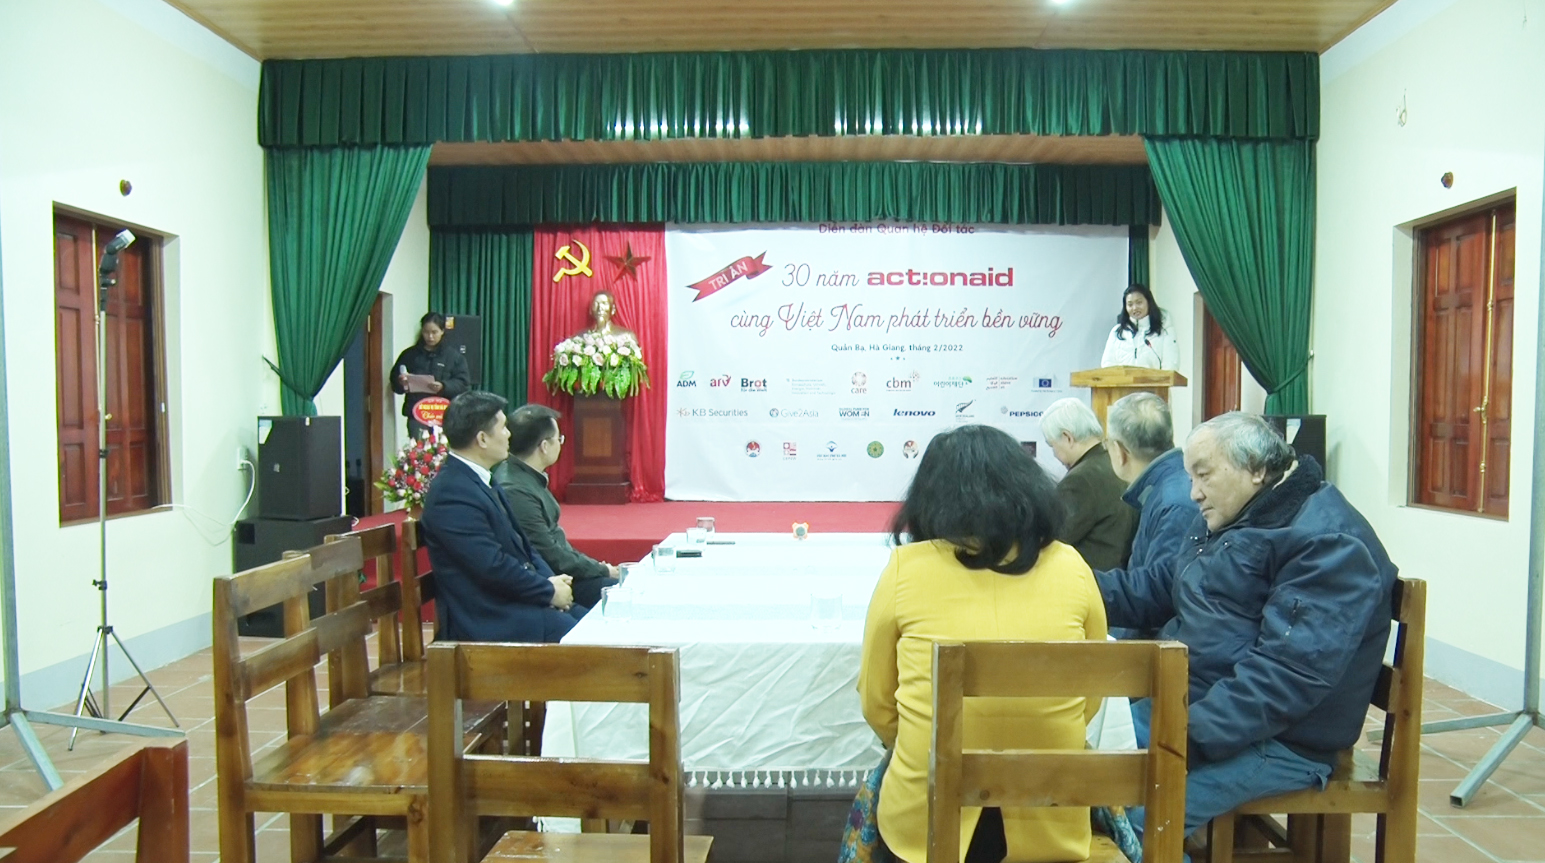 Phát động lễ kỷ niệm 30 năm thành lập tổ chức ActionAid Quốc tế tại Việt Nam.